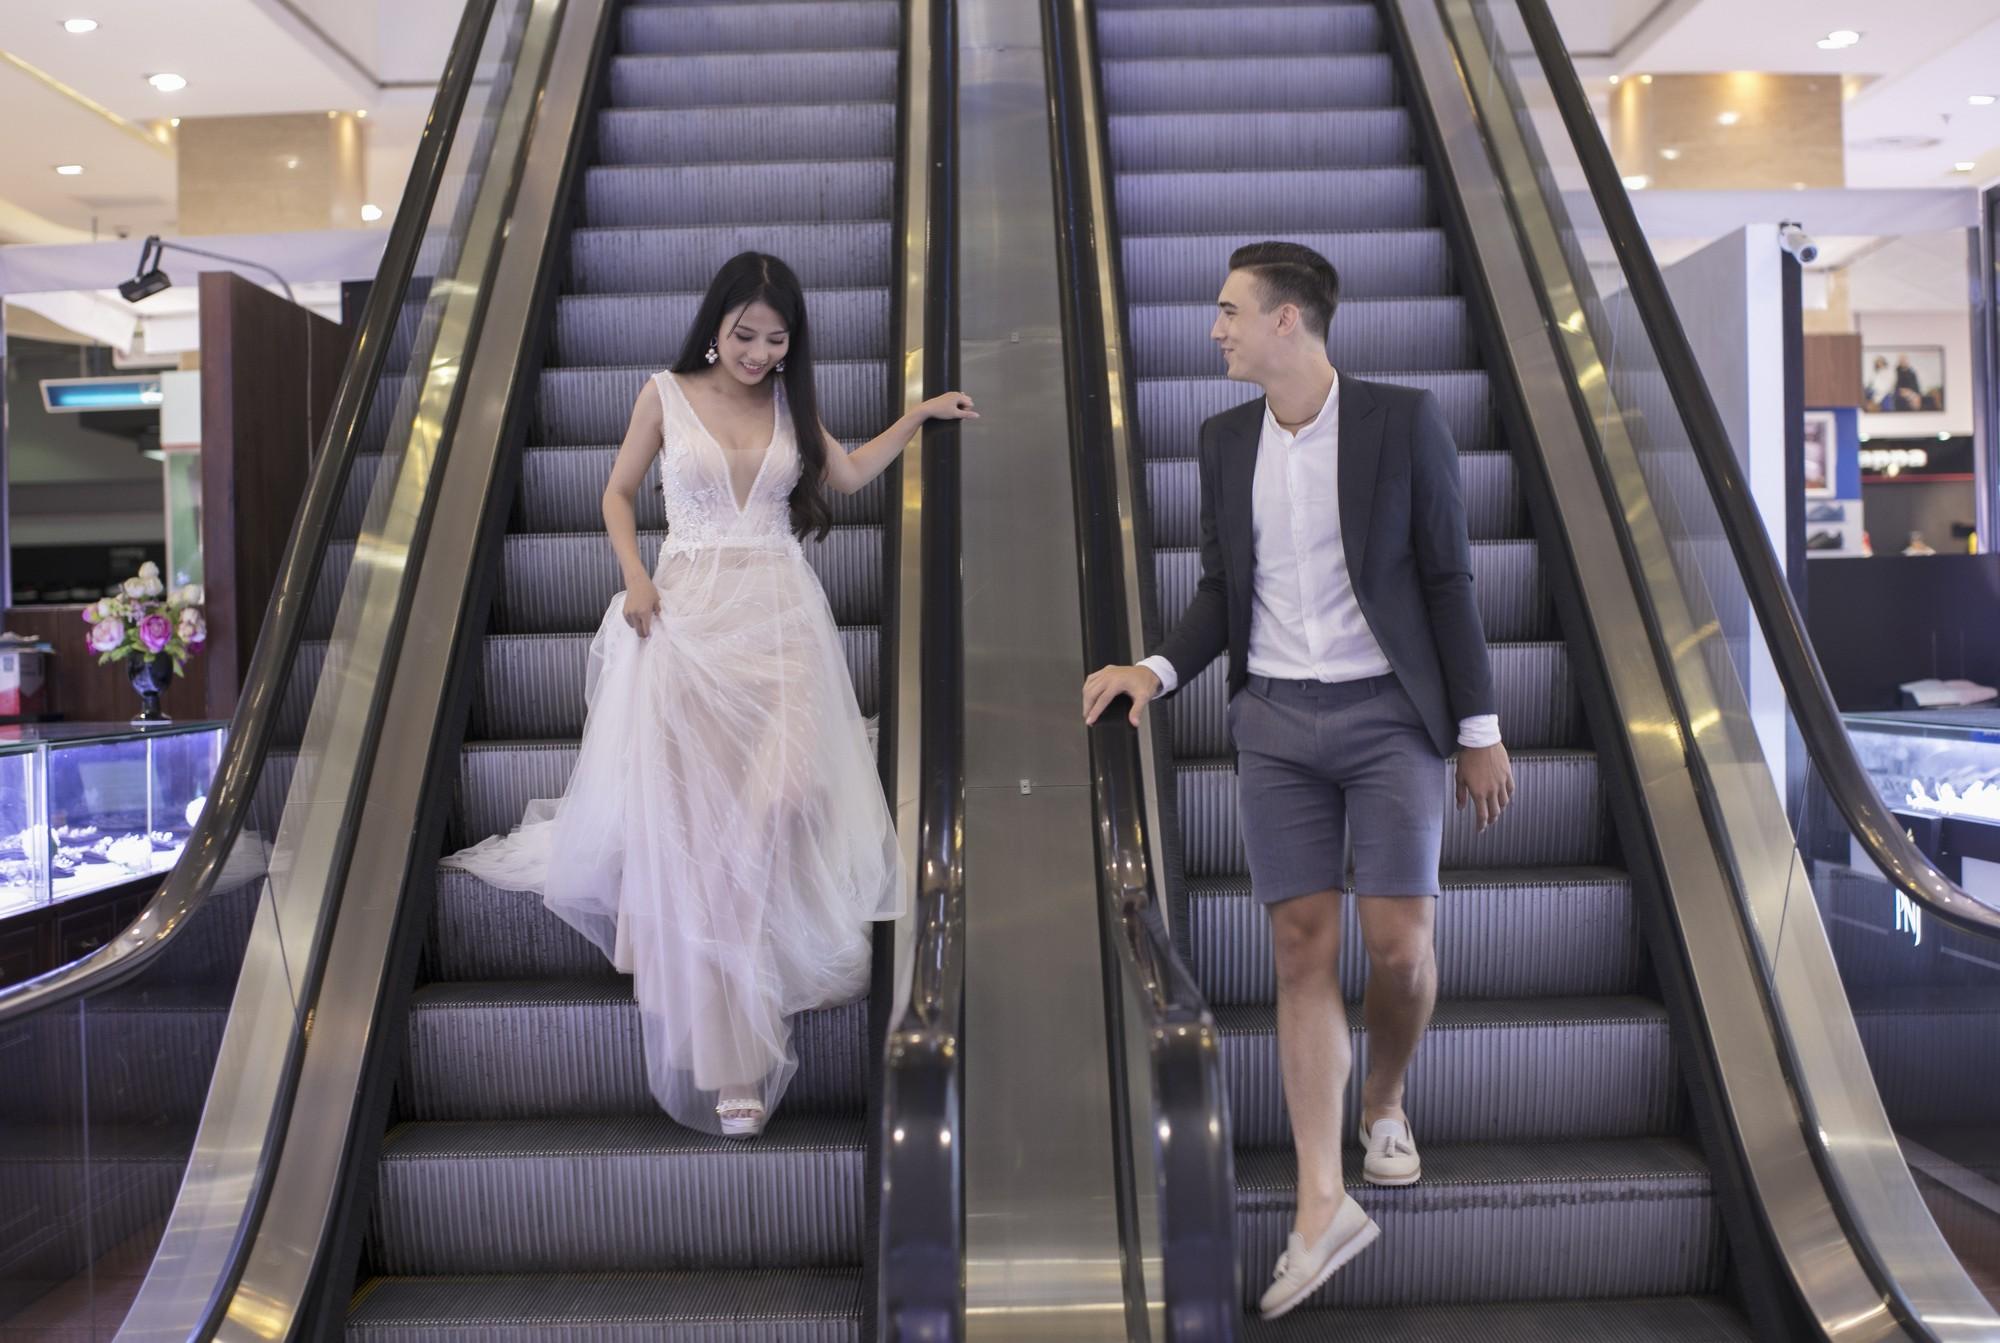 Chụp ảnh kỉ niệm ở thang máy, cặp đôi khiến dân tình đứng hình vì ngoại hình đẹp lung linh-10